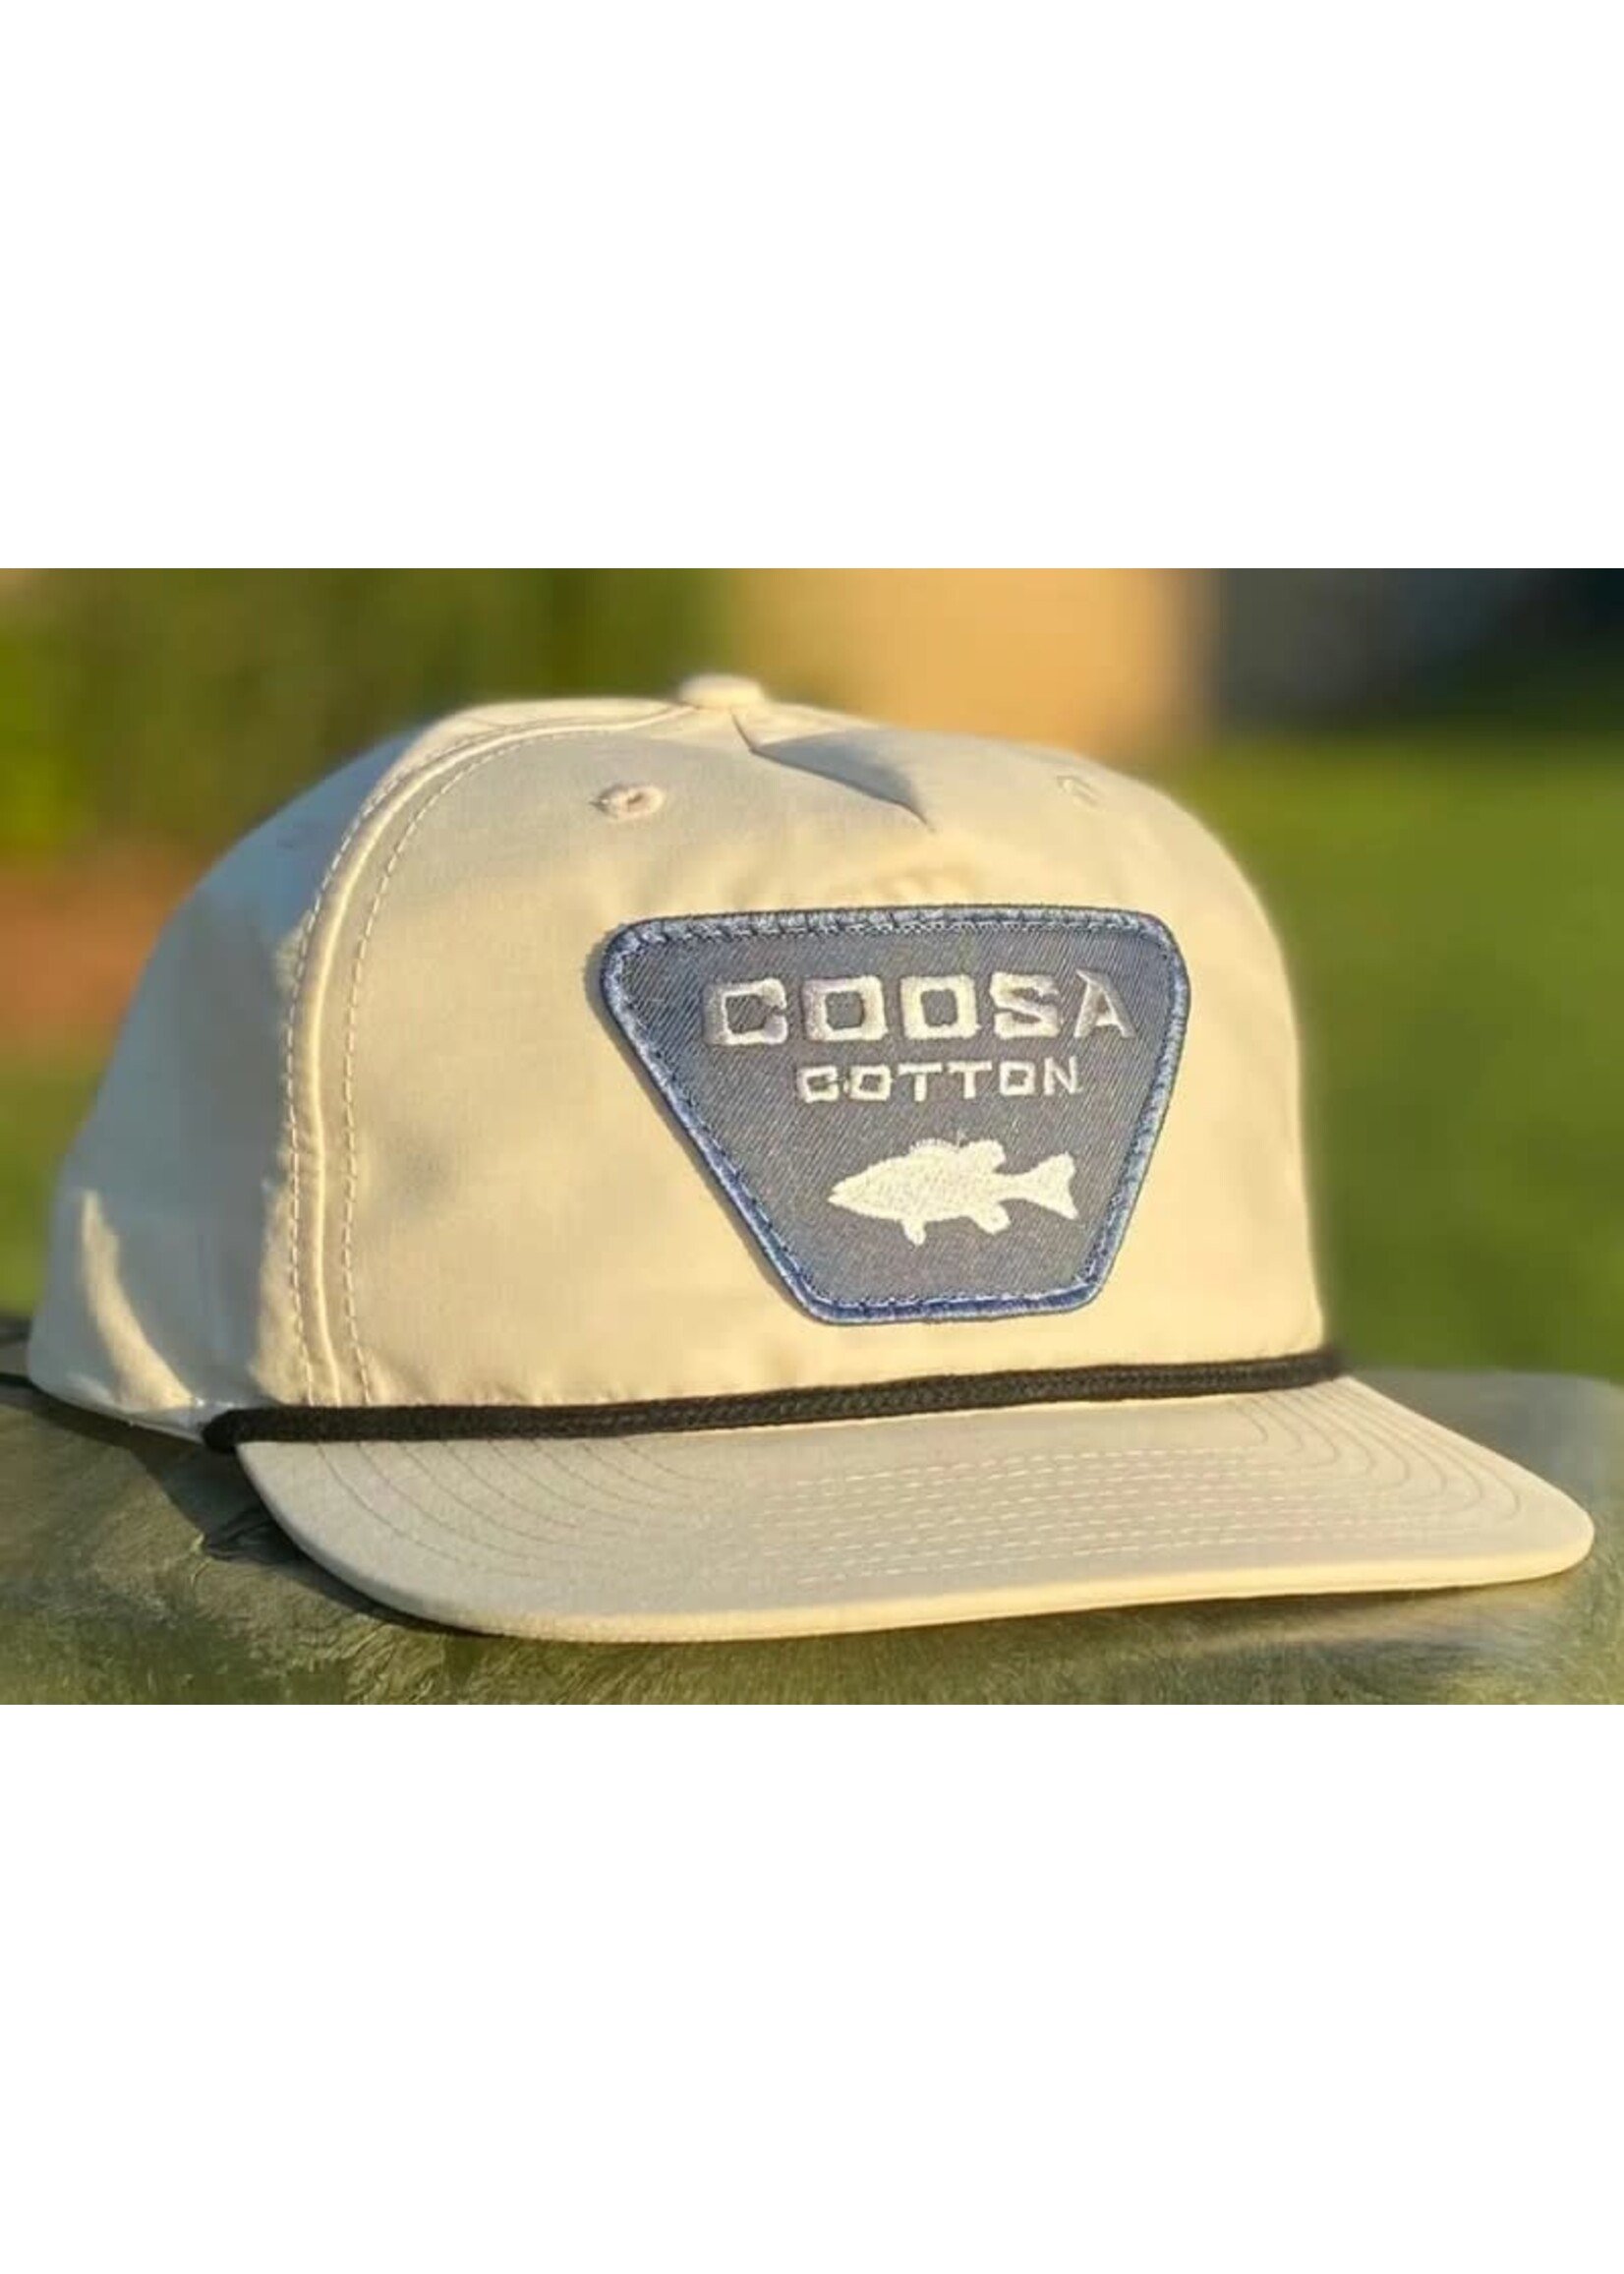 Coosa Cotton Hat